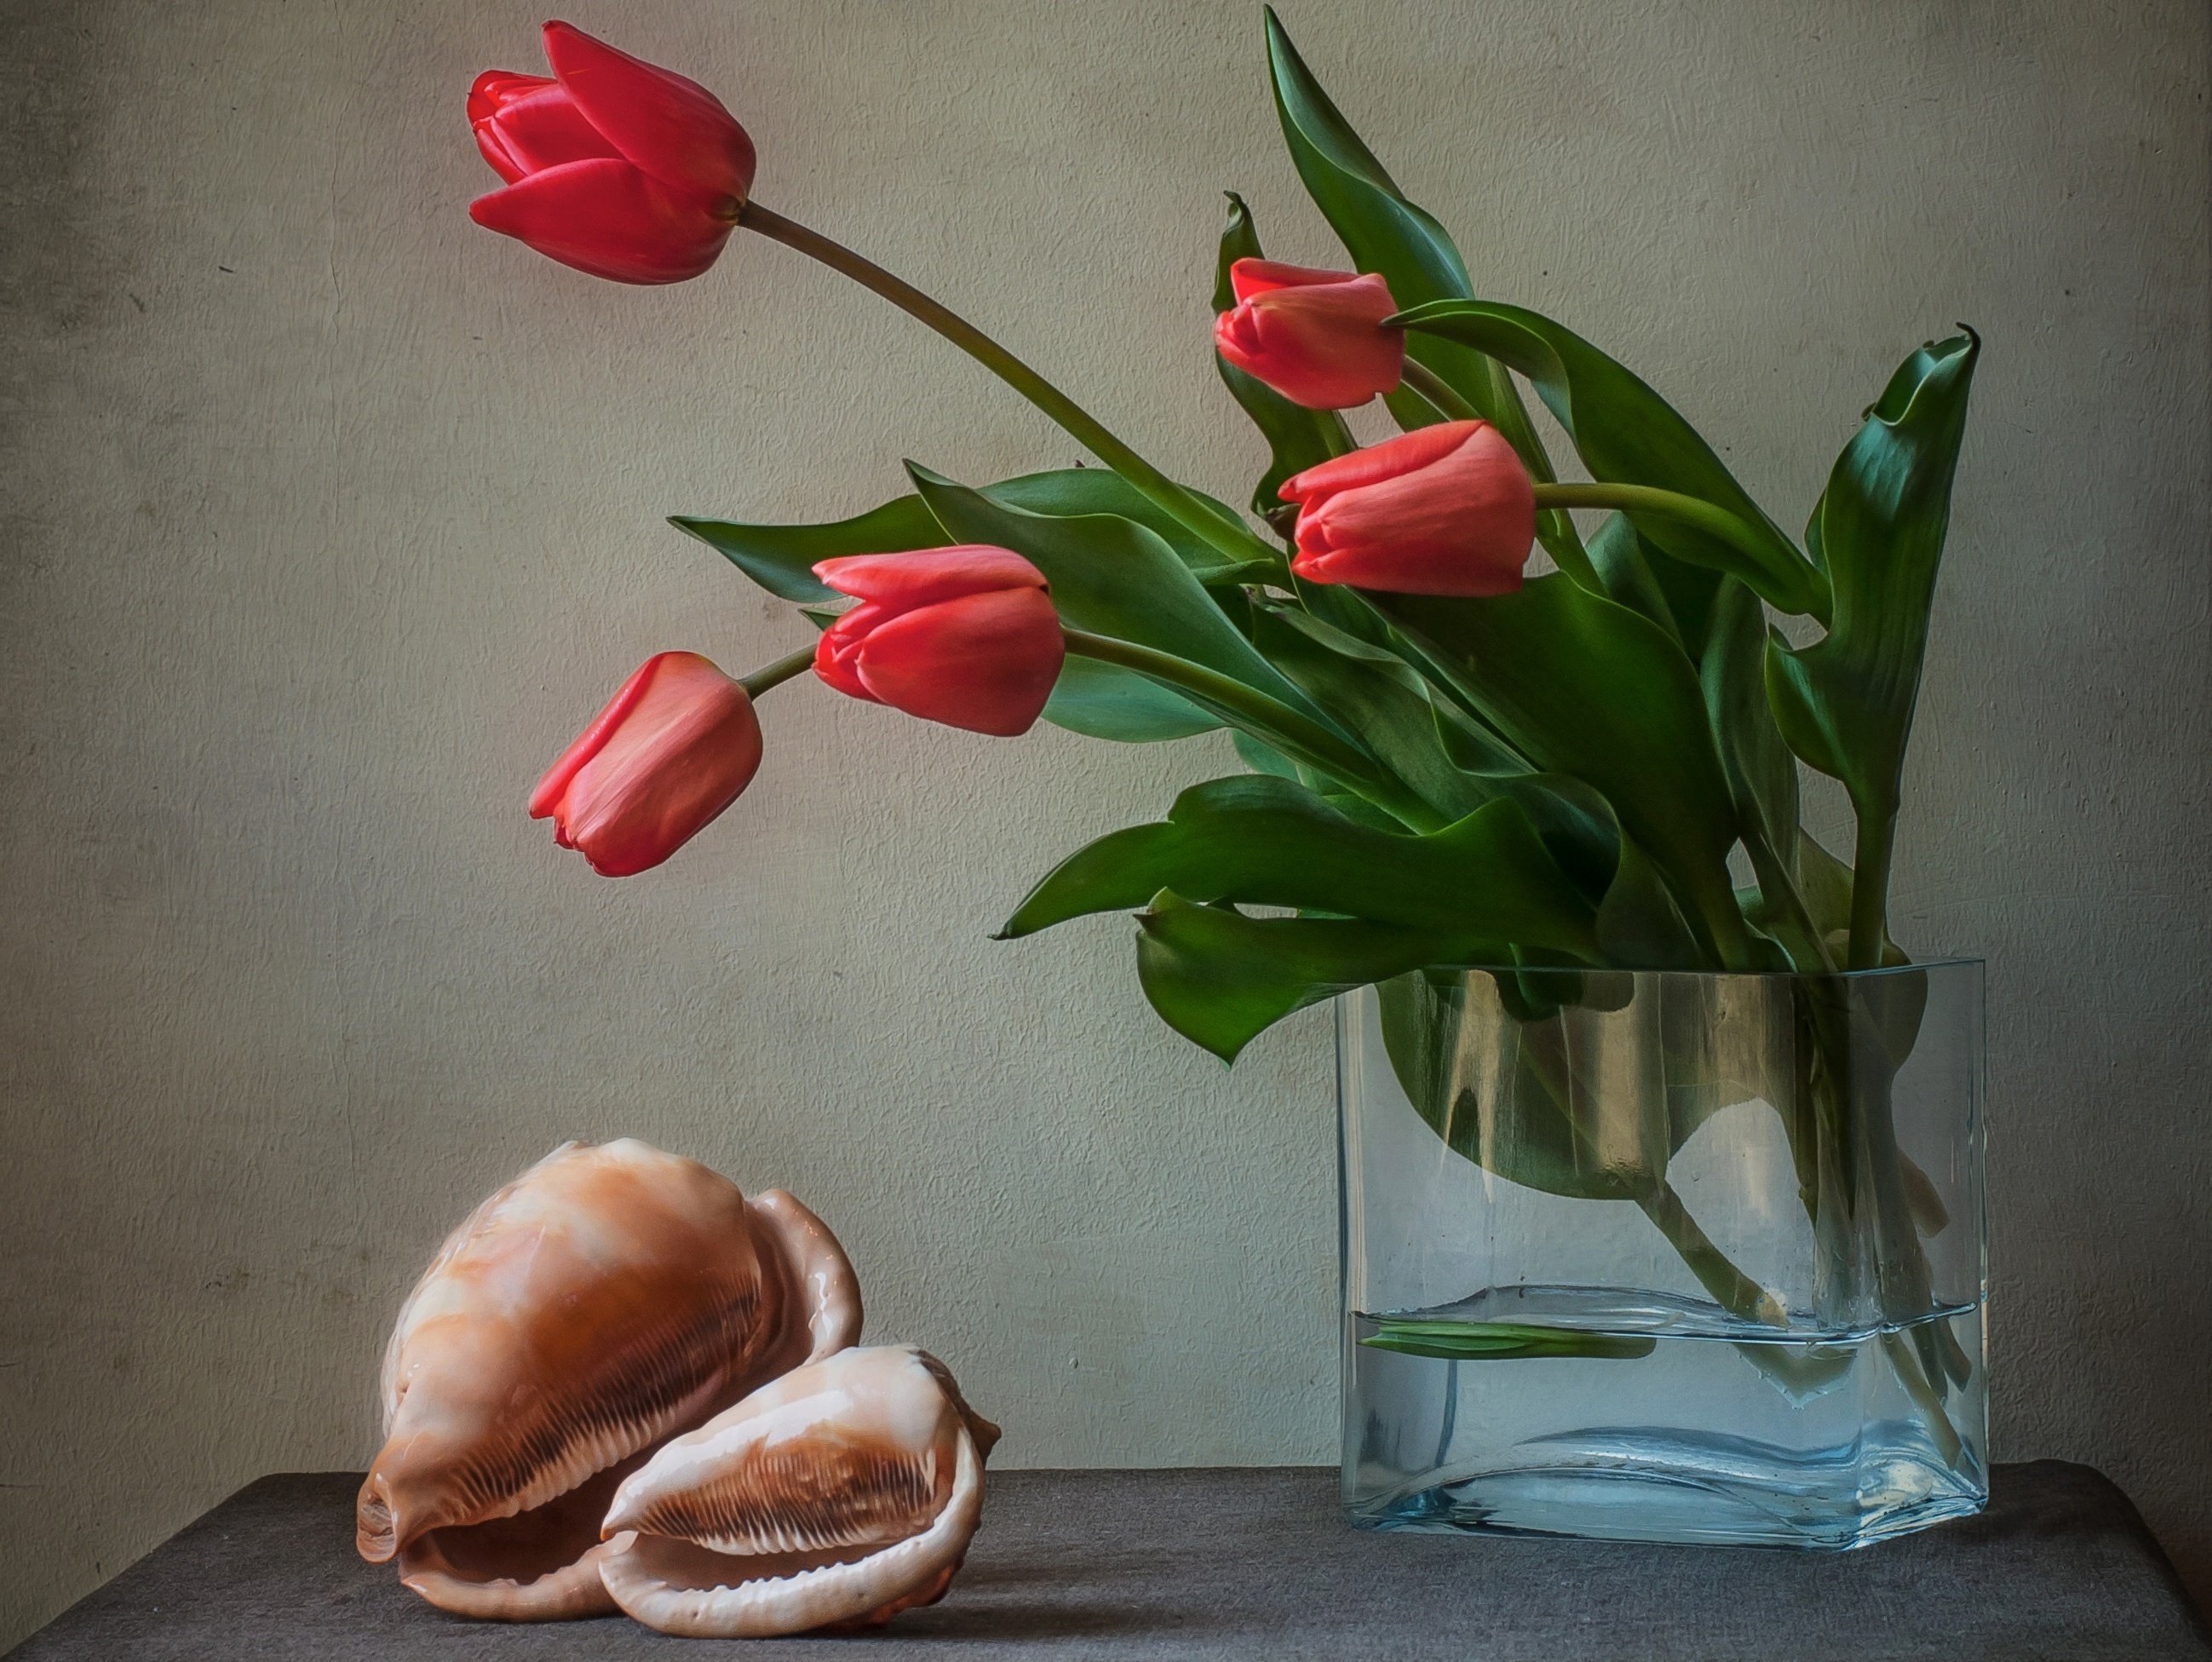 Почему упали тюльпаны в вазе